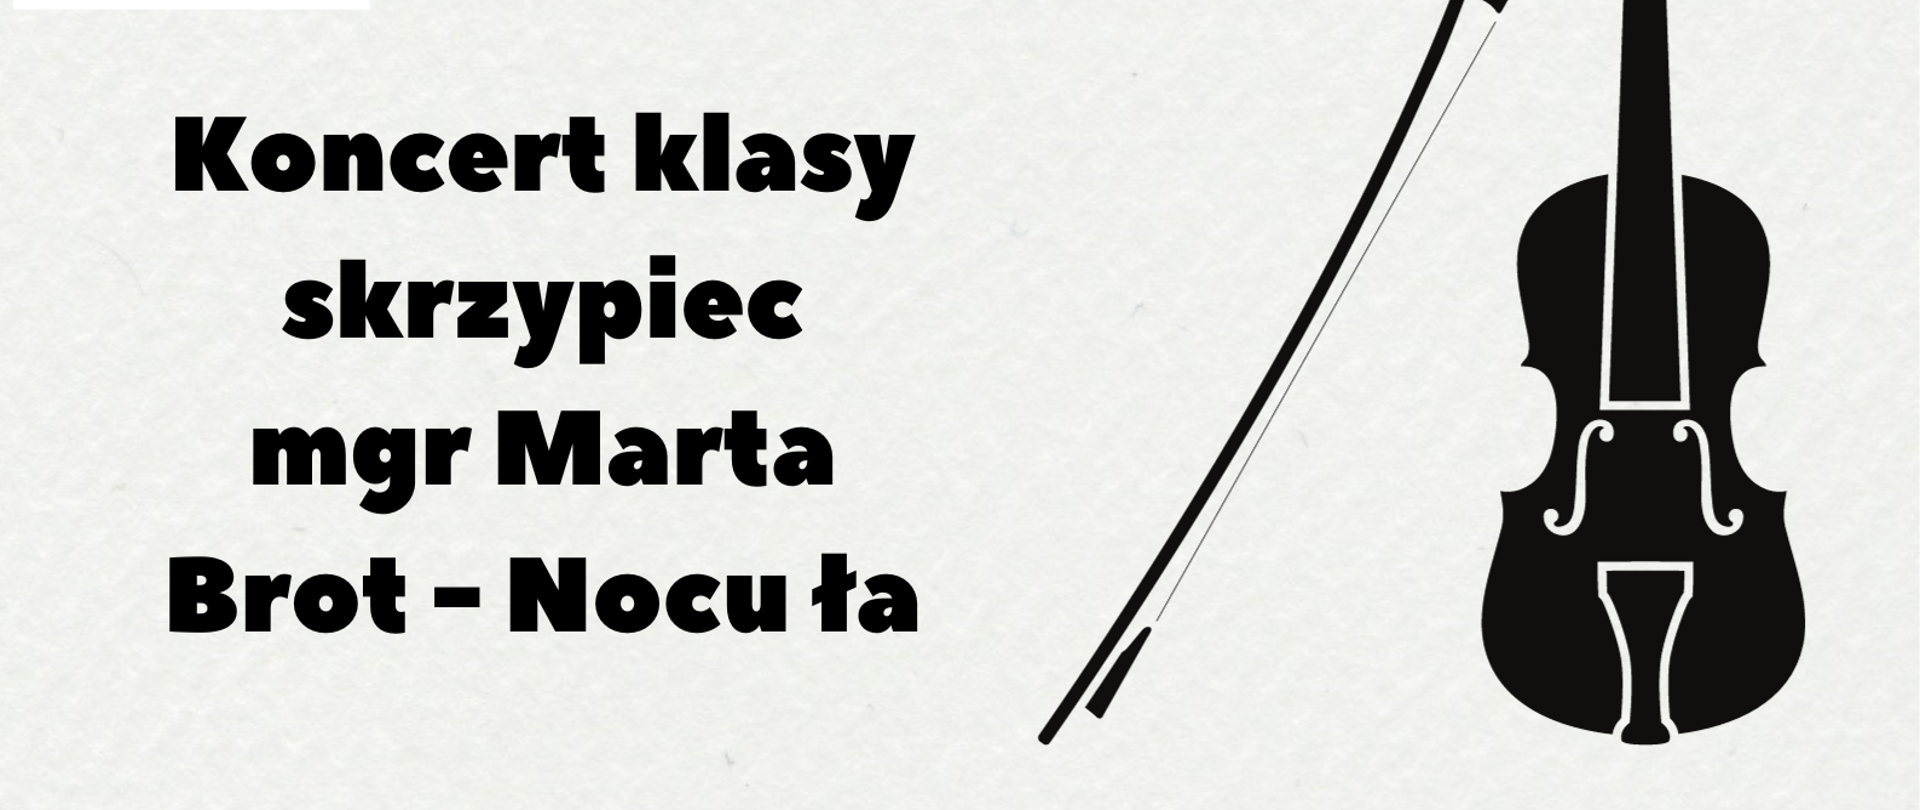 Plakat Koncerty klasy skrzypie mgr Marty Brot-Nocuły. W lewym górnym rogu plakatu znajduje się logo szkoły muzycznej, po prawej stronie umieszczona została czarna grafika przedstawiająca skrzypce. W dolnej części plakatu znajduje się ozdobna pięciolinia ze znakami muzcznymi.